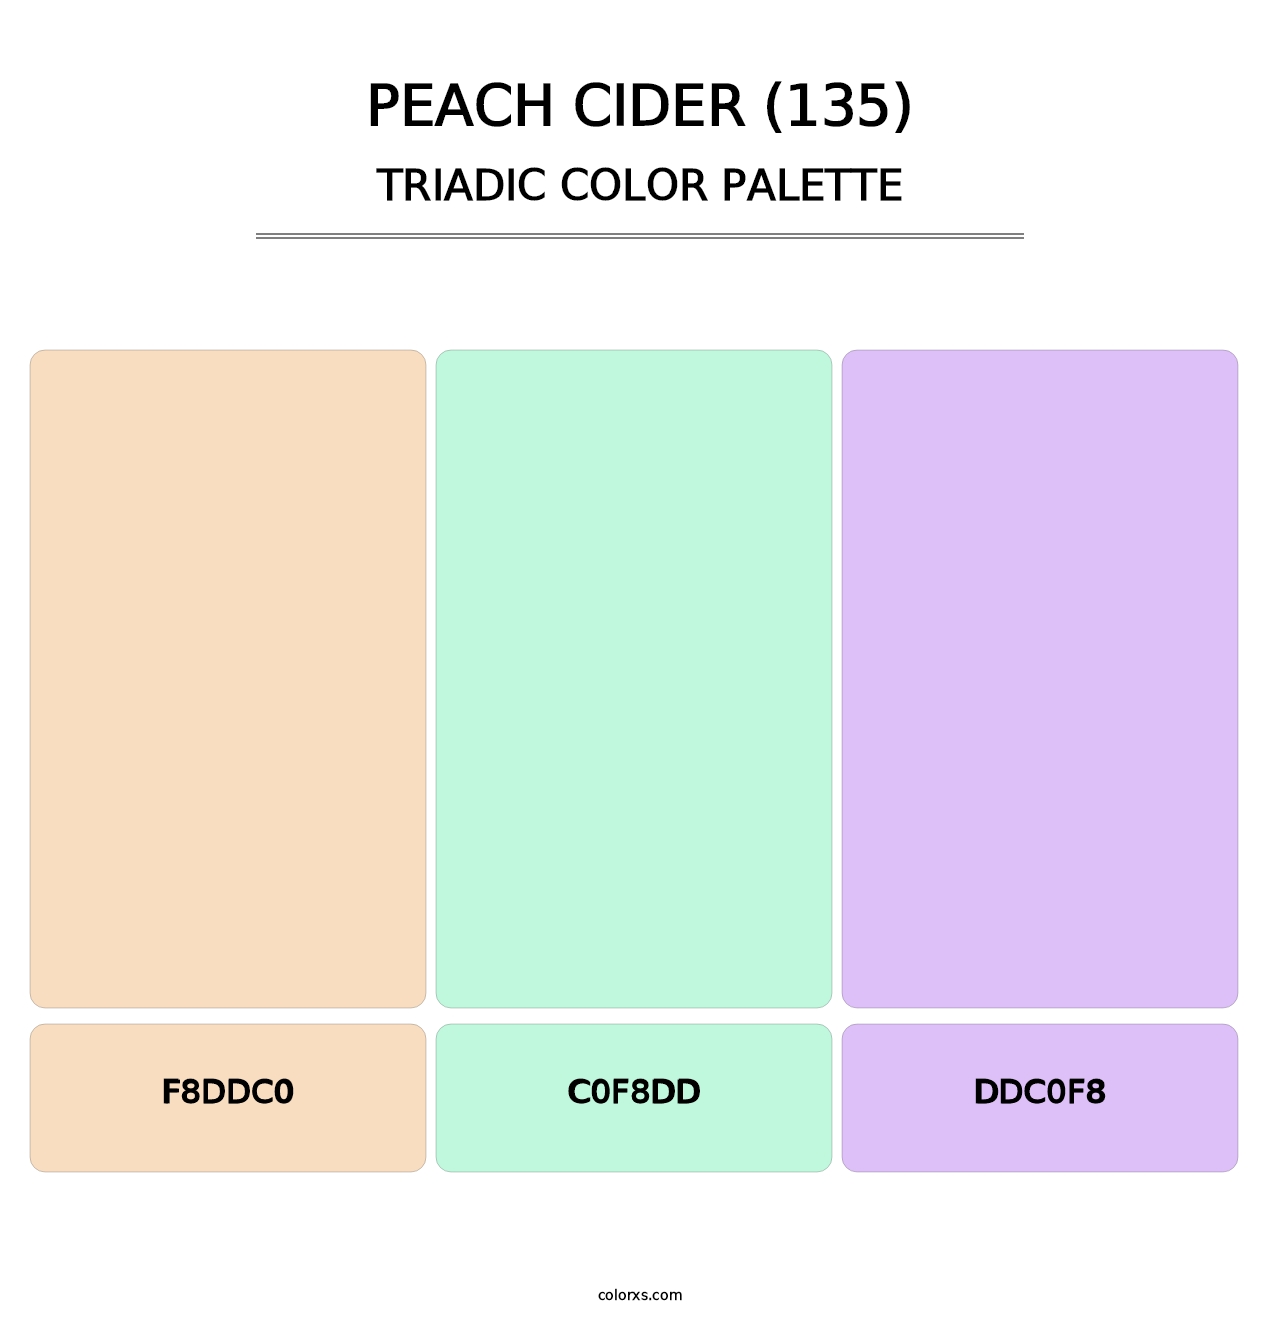 Peach Cider (135) - Triadic Color Palette